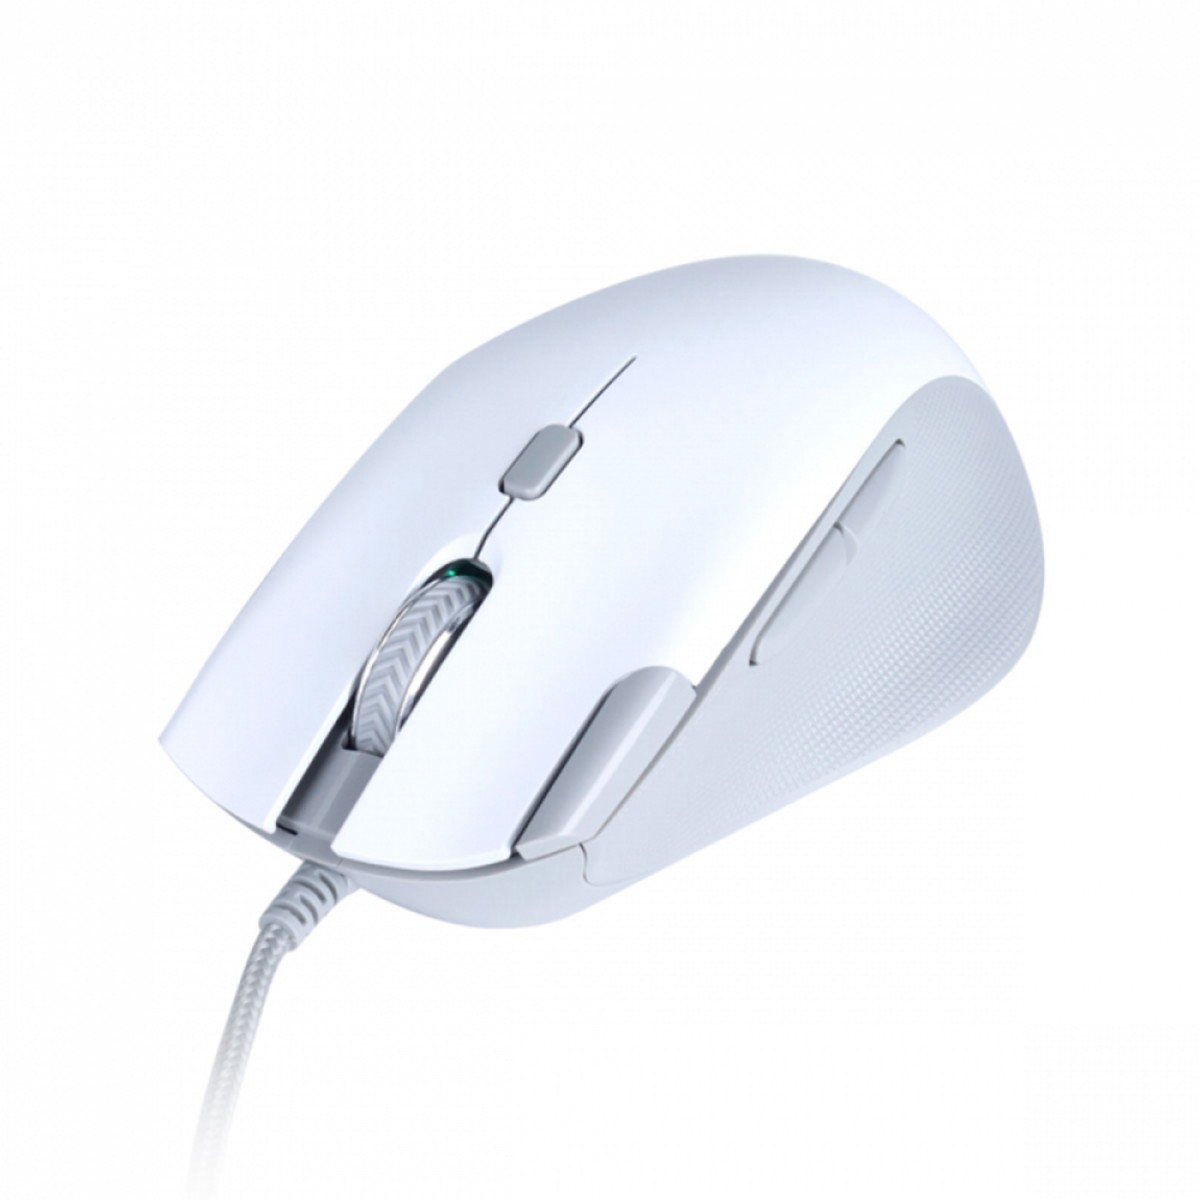 Mouse Gamer PCYES Zyron, RGB, 6 Botões, 12800 DPI, White, PMGZRGBW